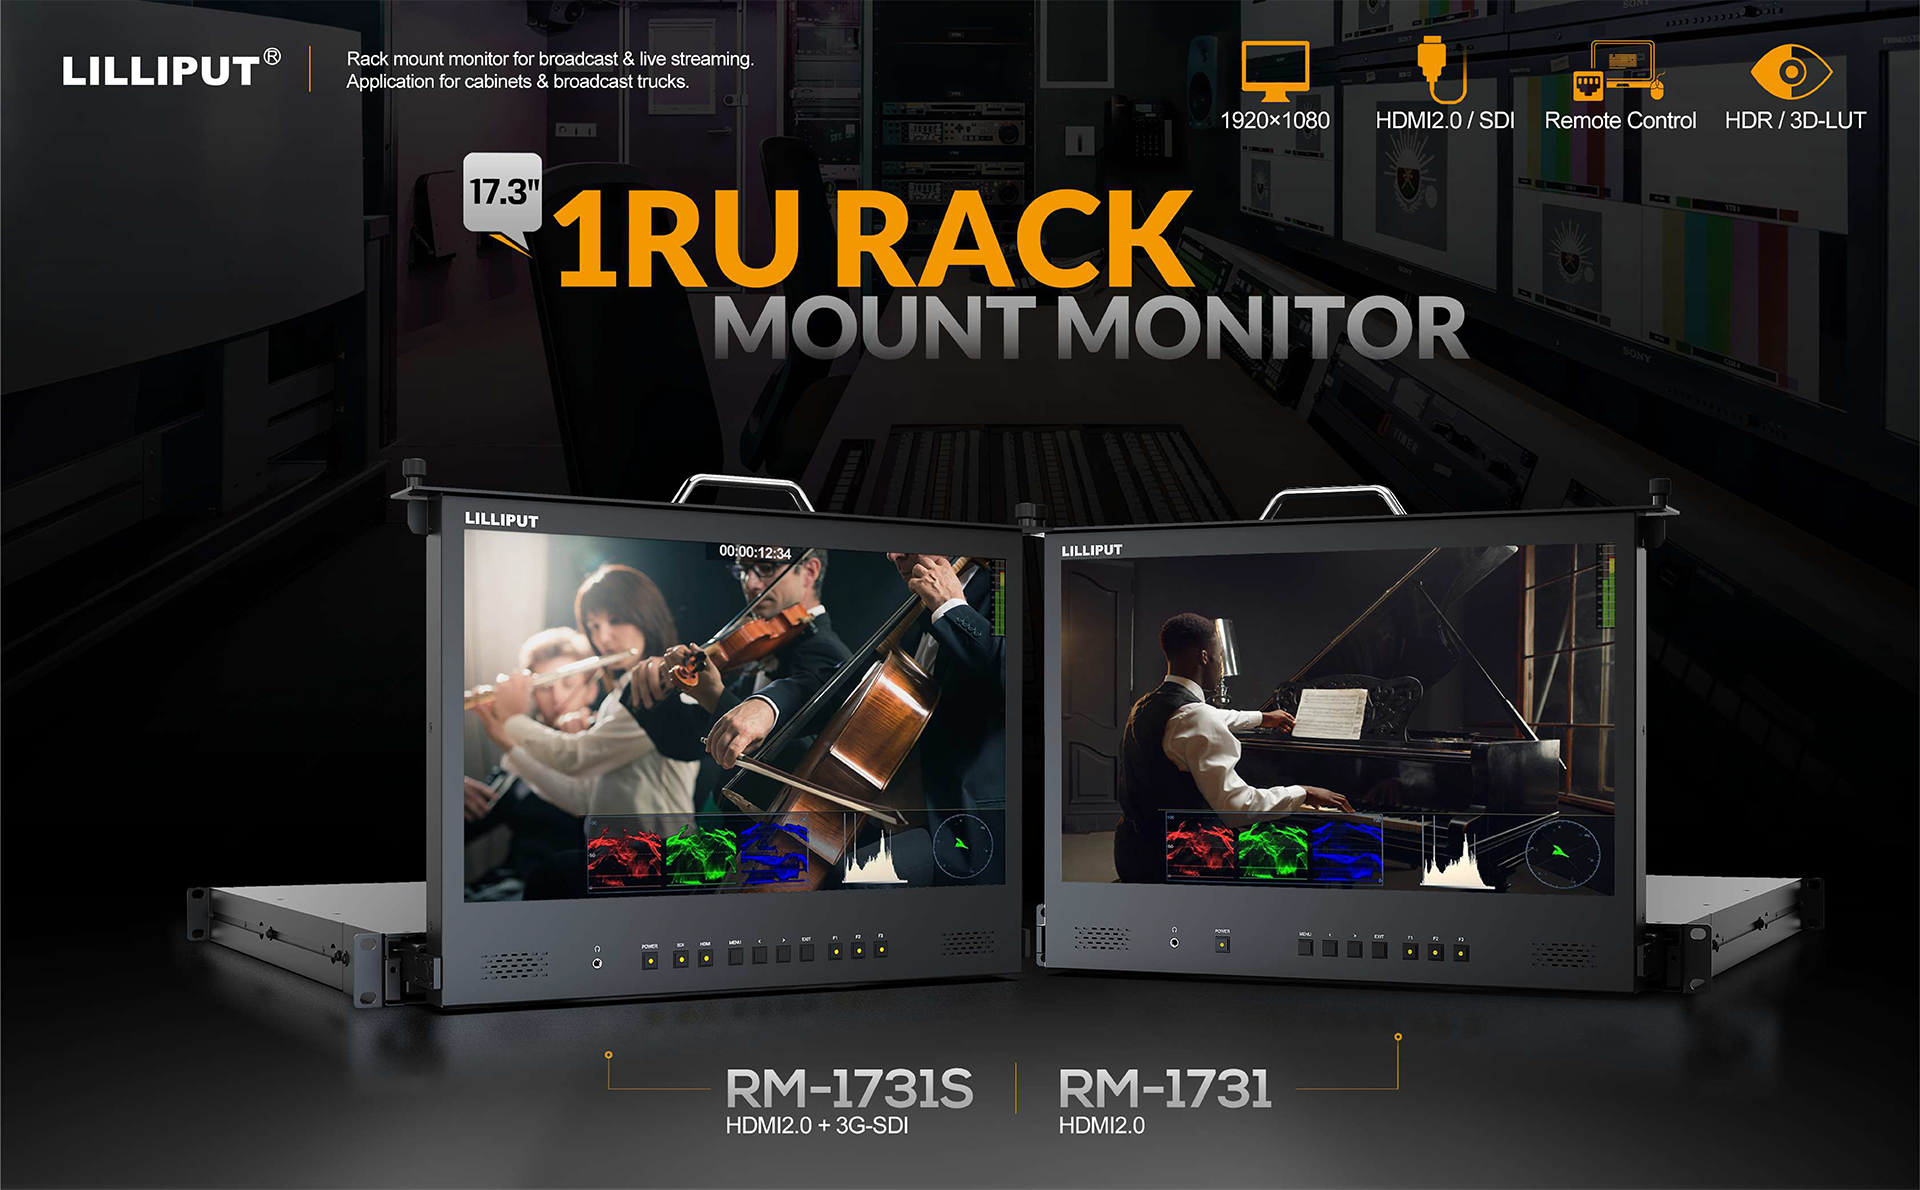 Rack mount monitor